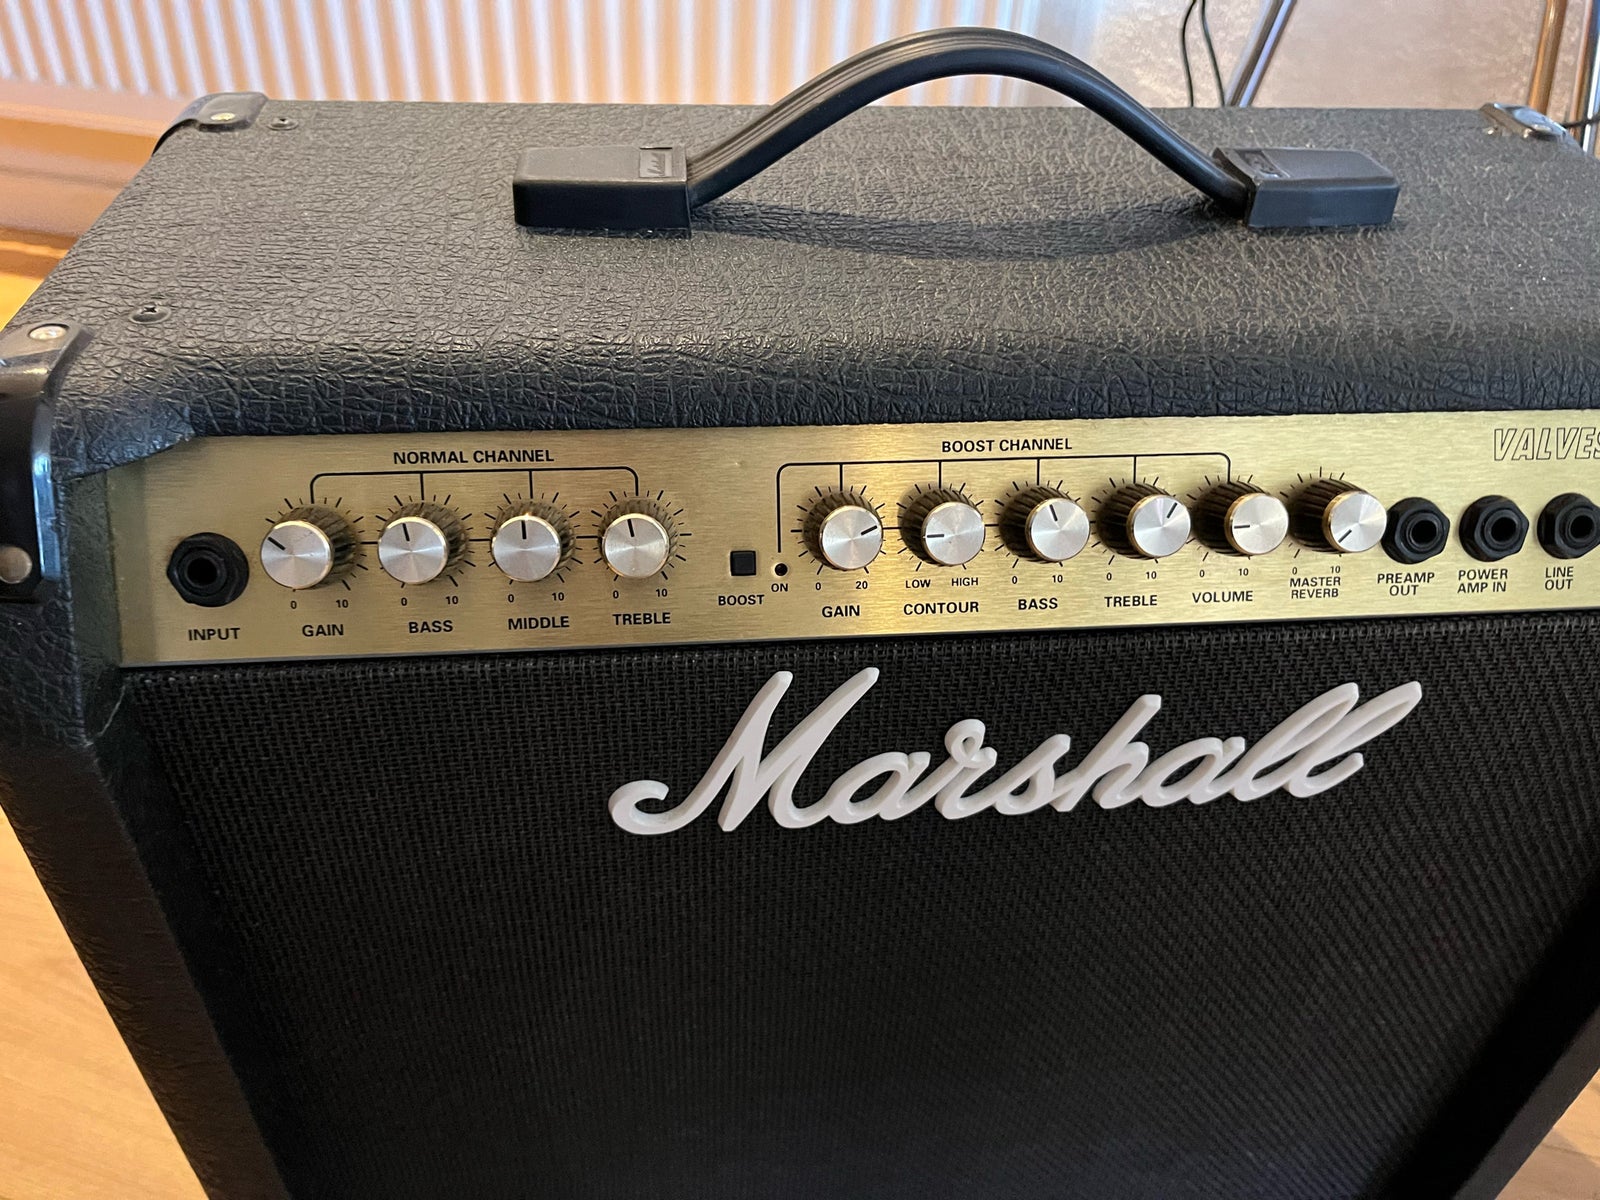 Guitarcombo, Marshall Valvestate 8040, 40 W